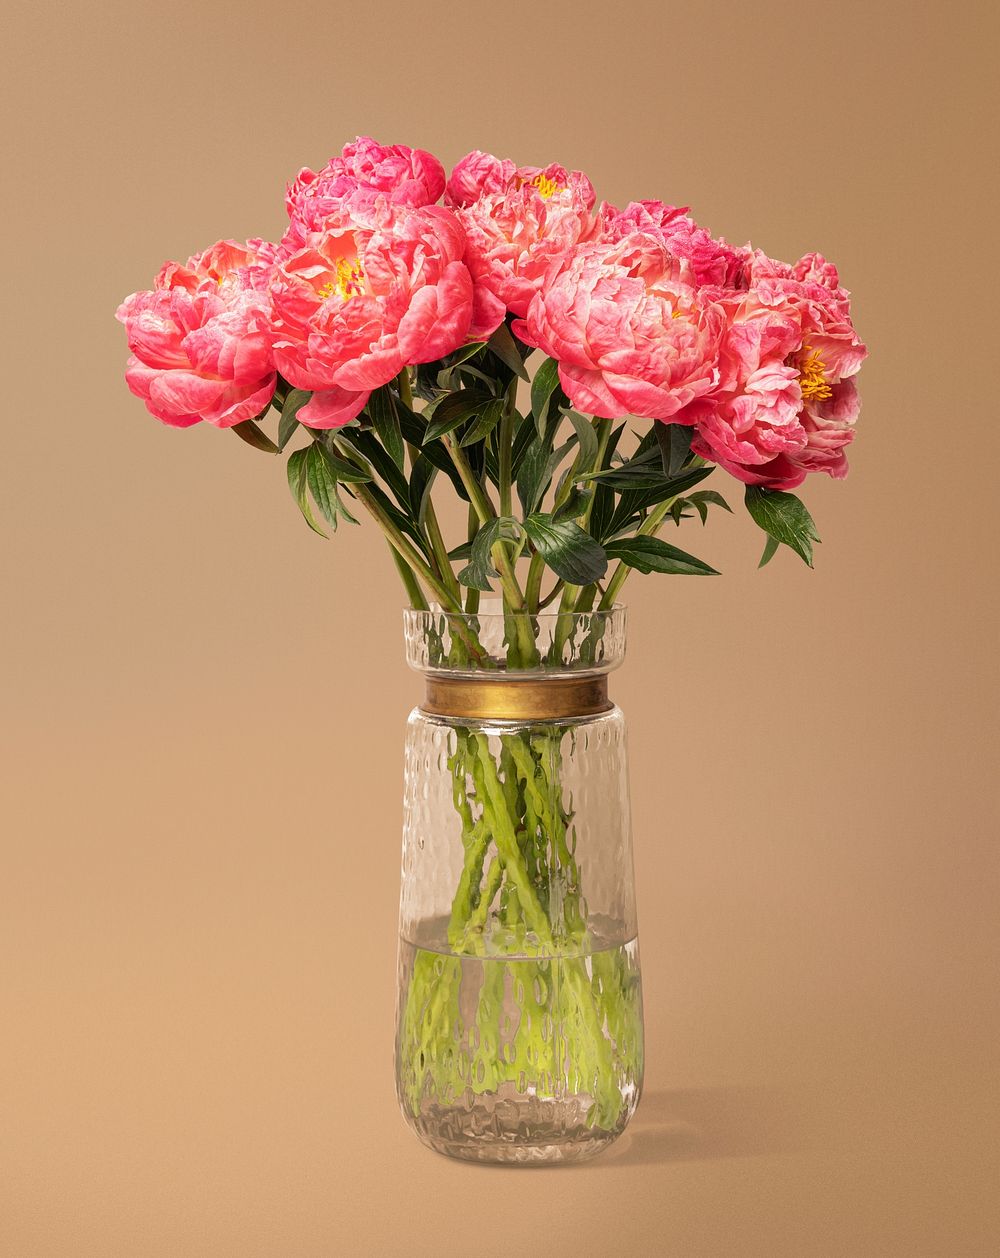 Pink peonies in glass vase, flower arrangement, home decor